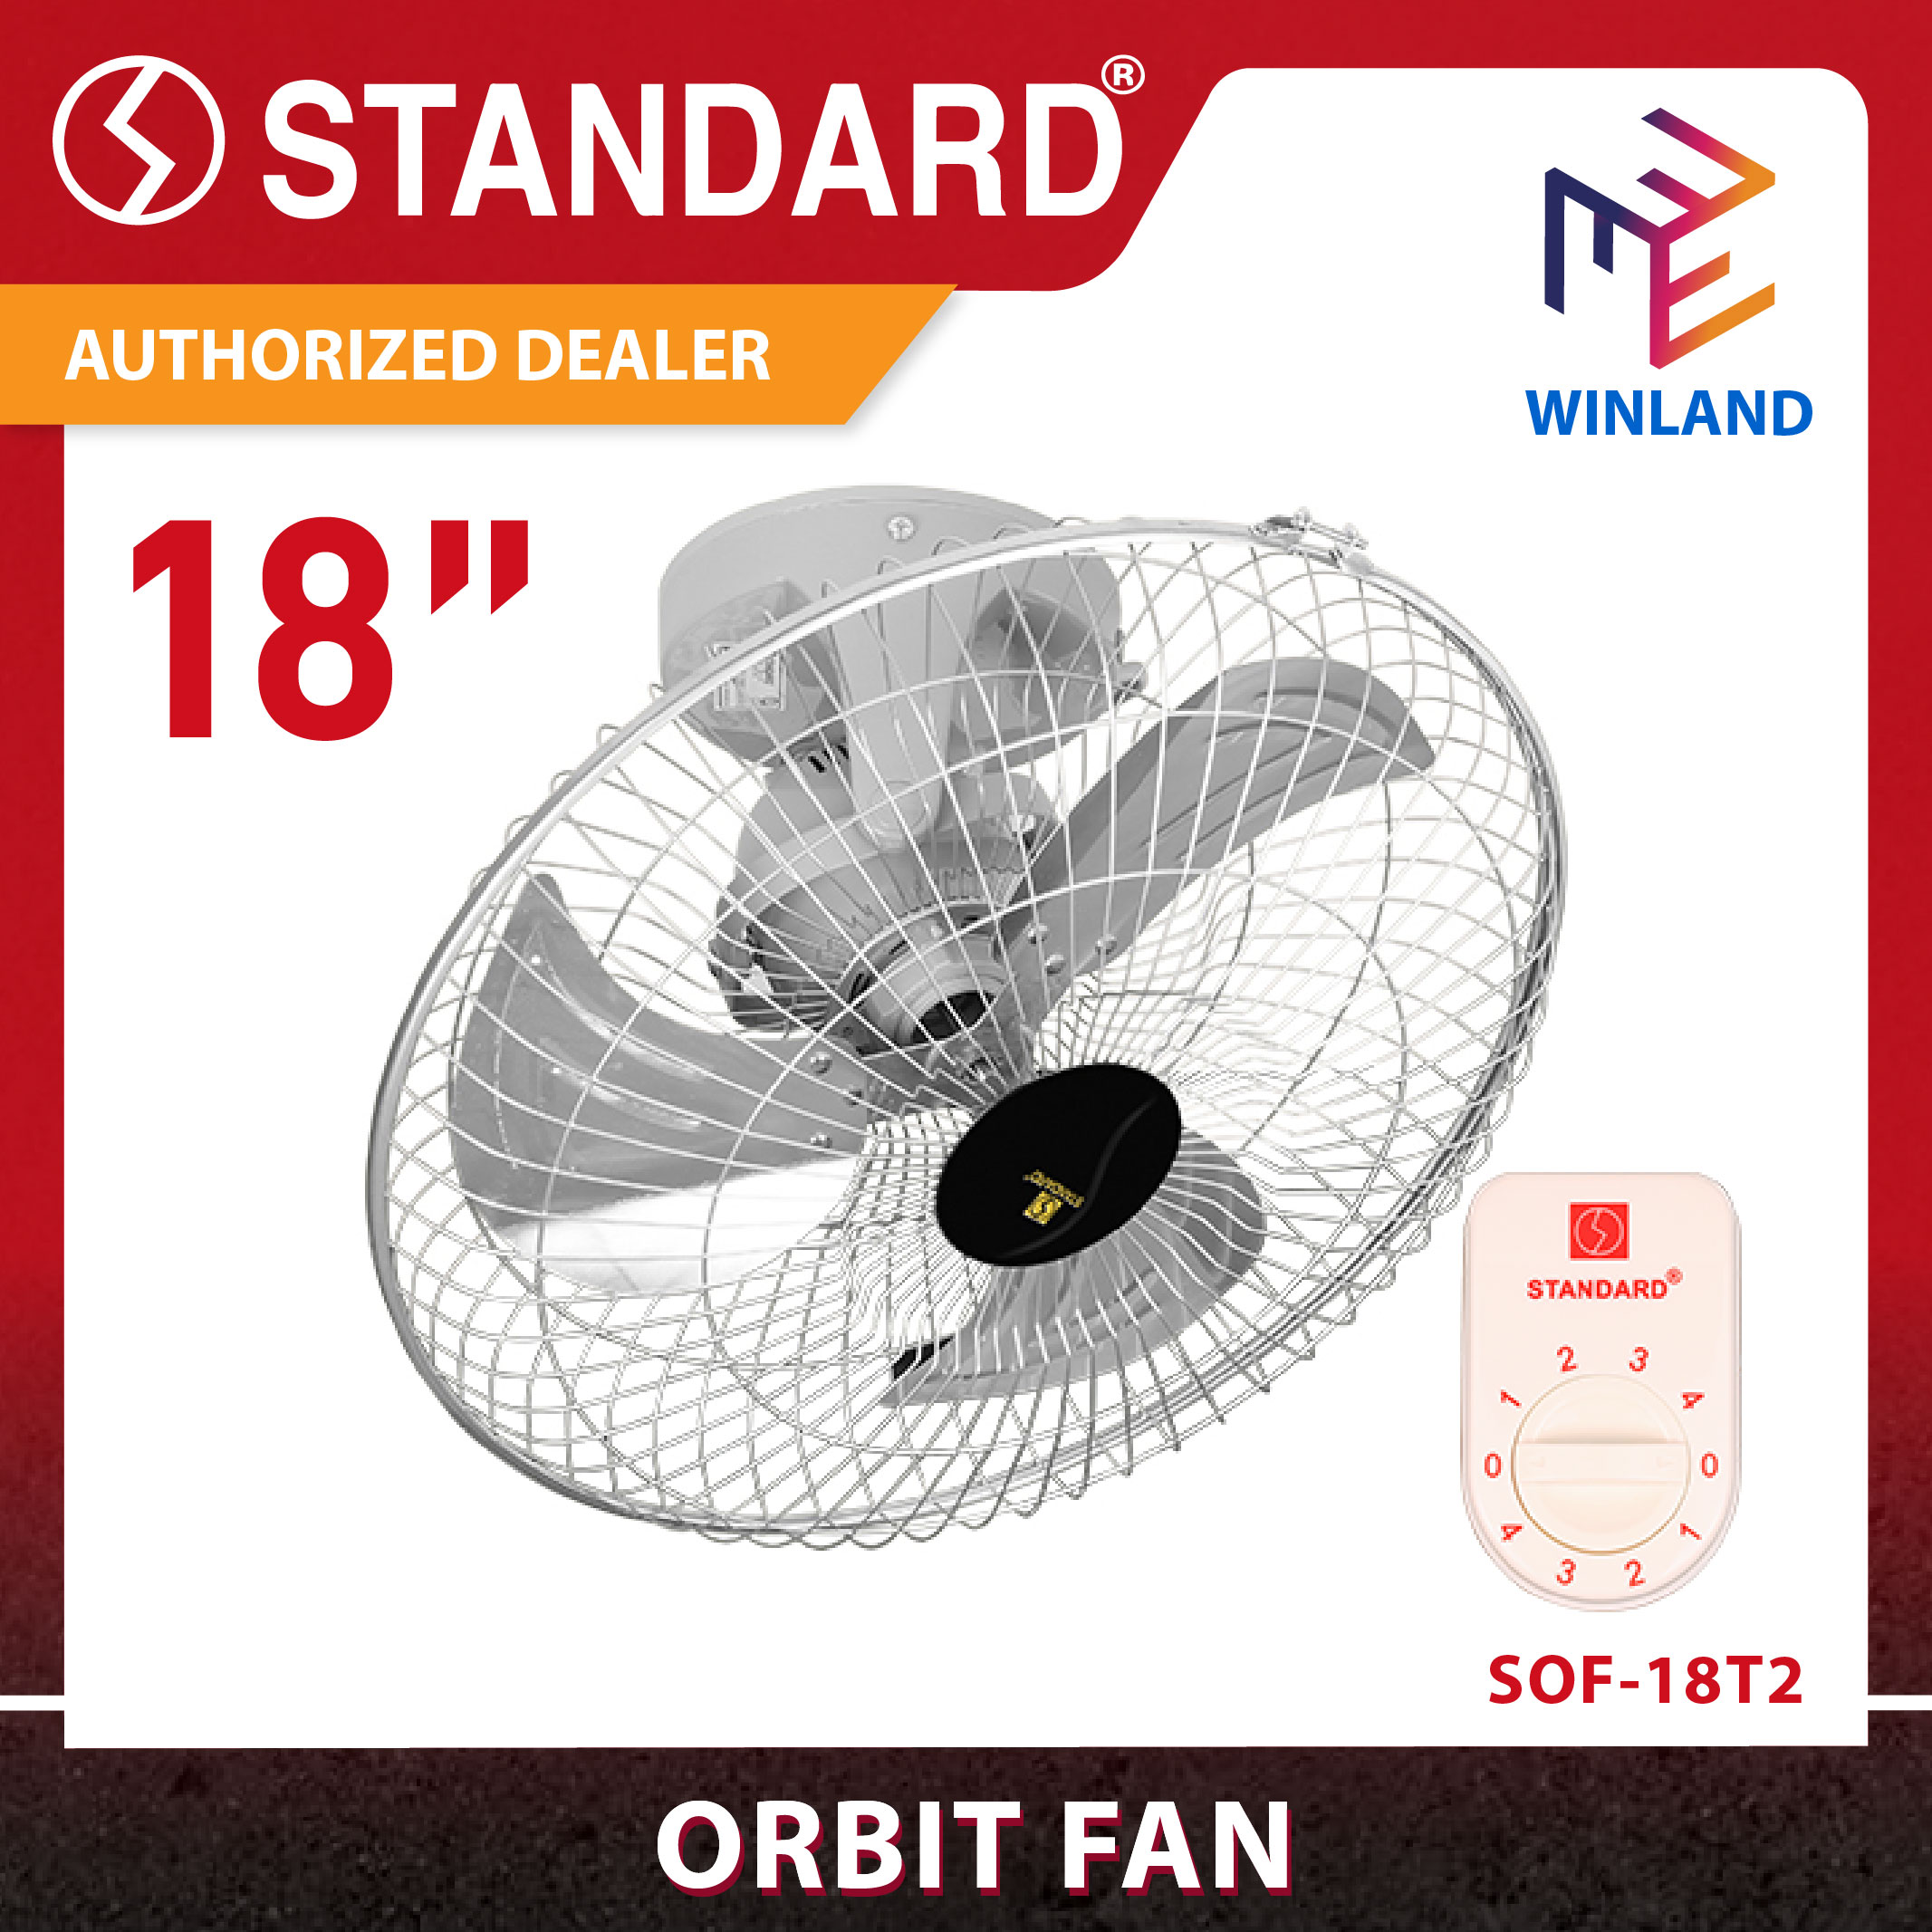 Winland 18" Electric Orbit Ceiling Fan